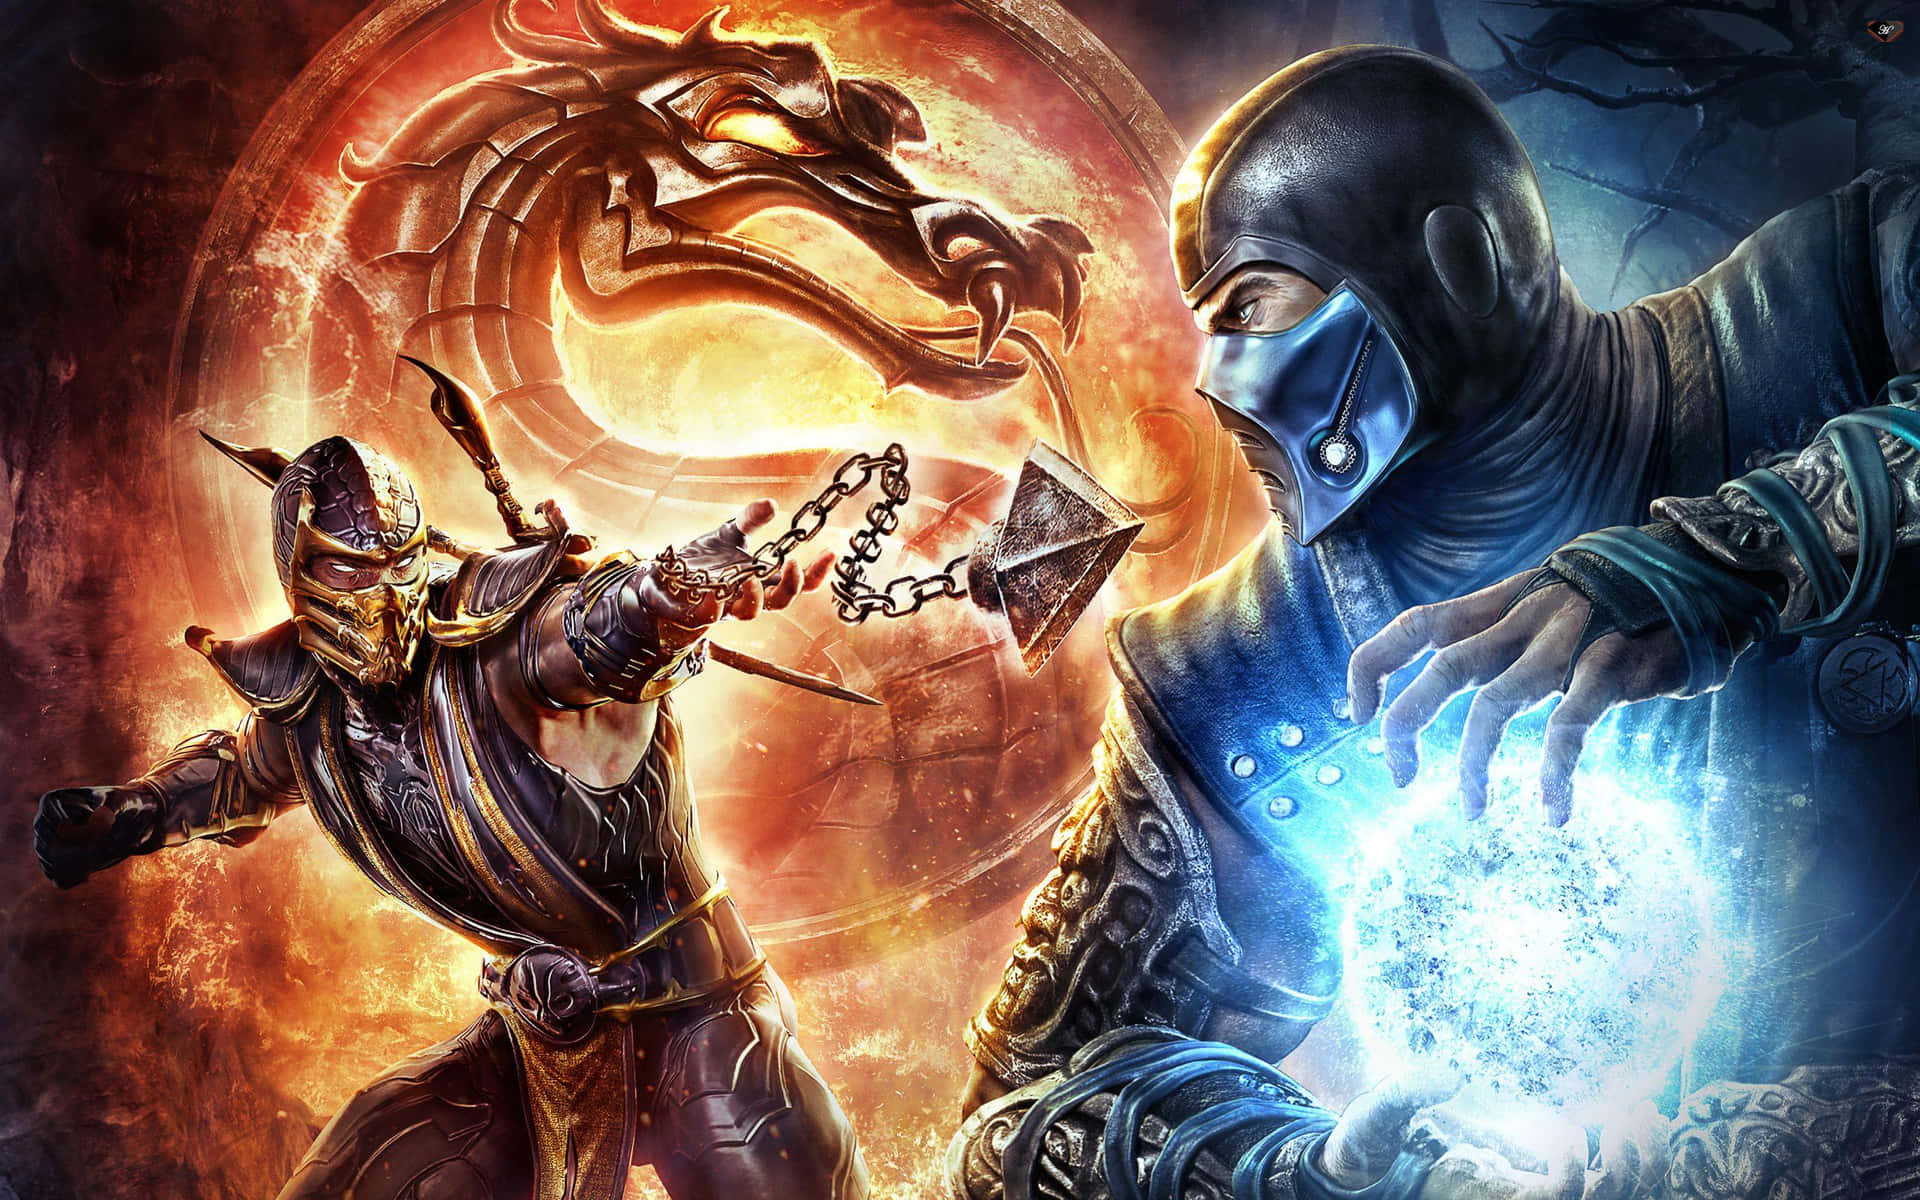 Oplevden Legendariske Brutalitet I Mortal Kombat!